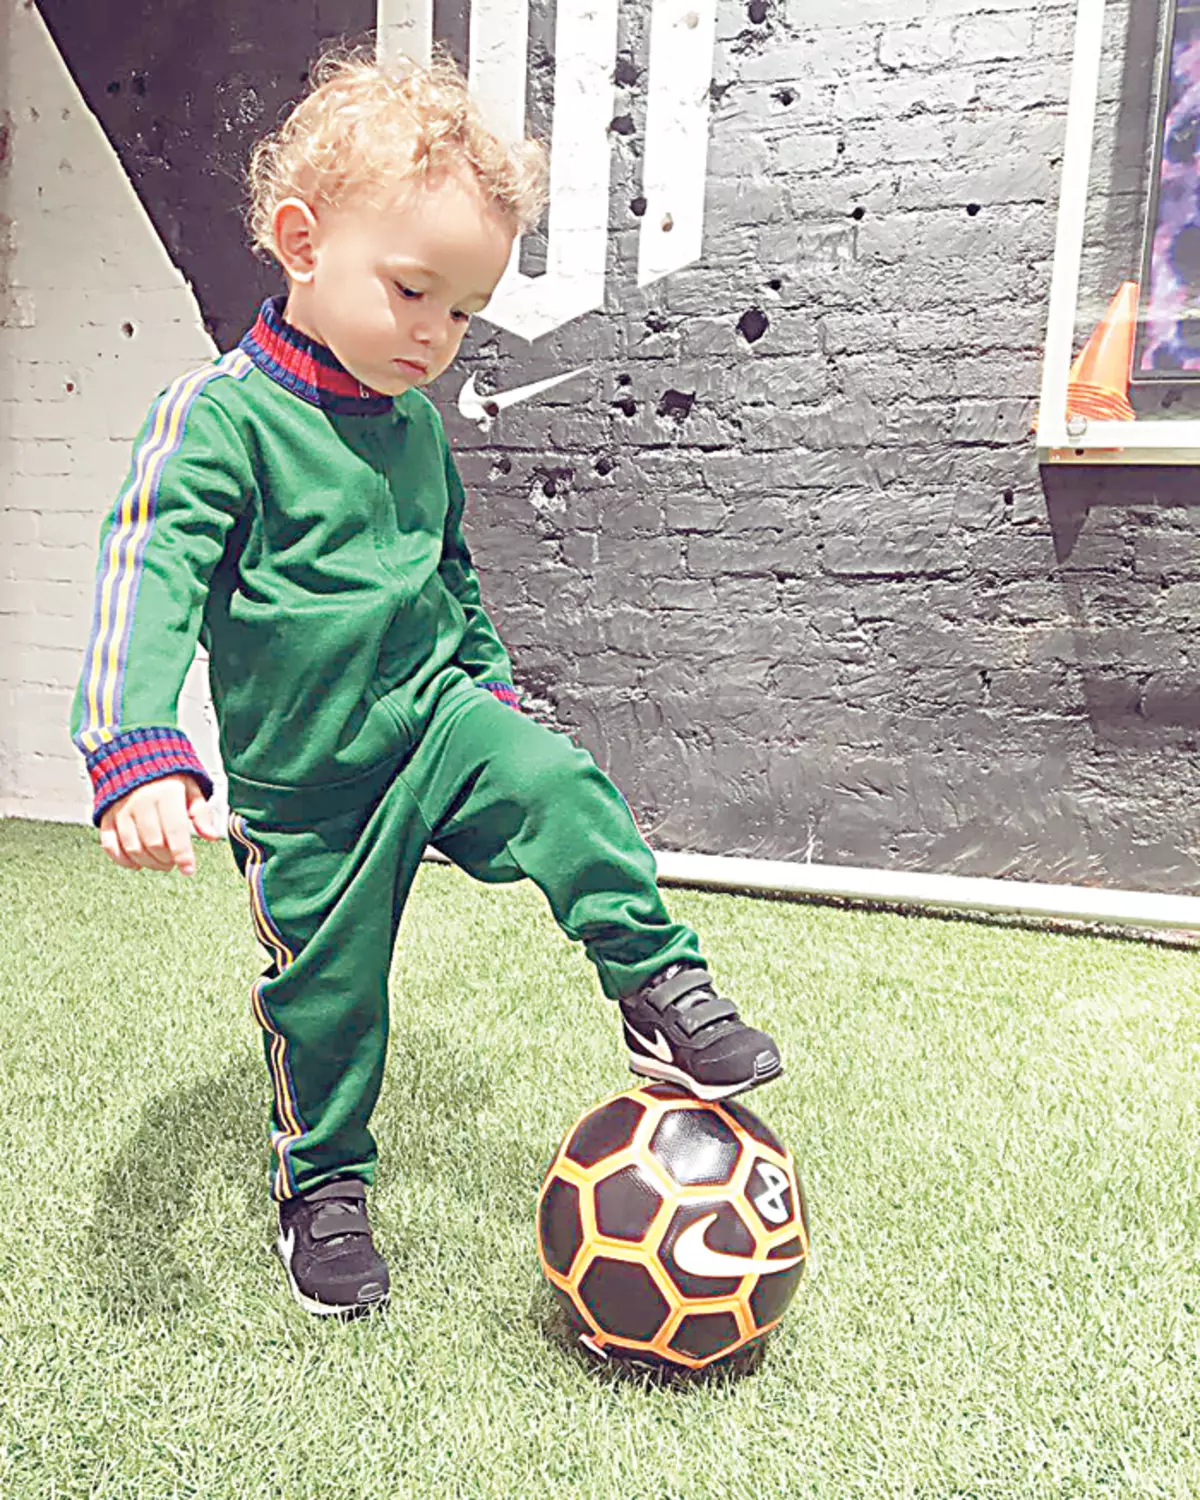 El miembro más joven de la familia Zhirkov, el hijo de Daniel, ningún día puede vivir sin un partido de fútbol.